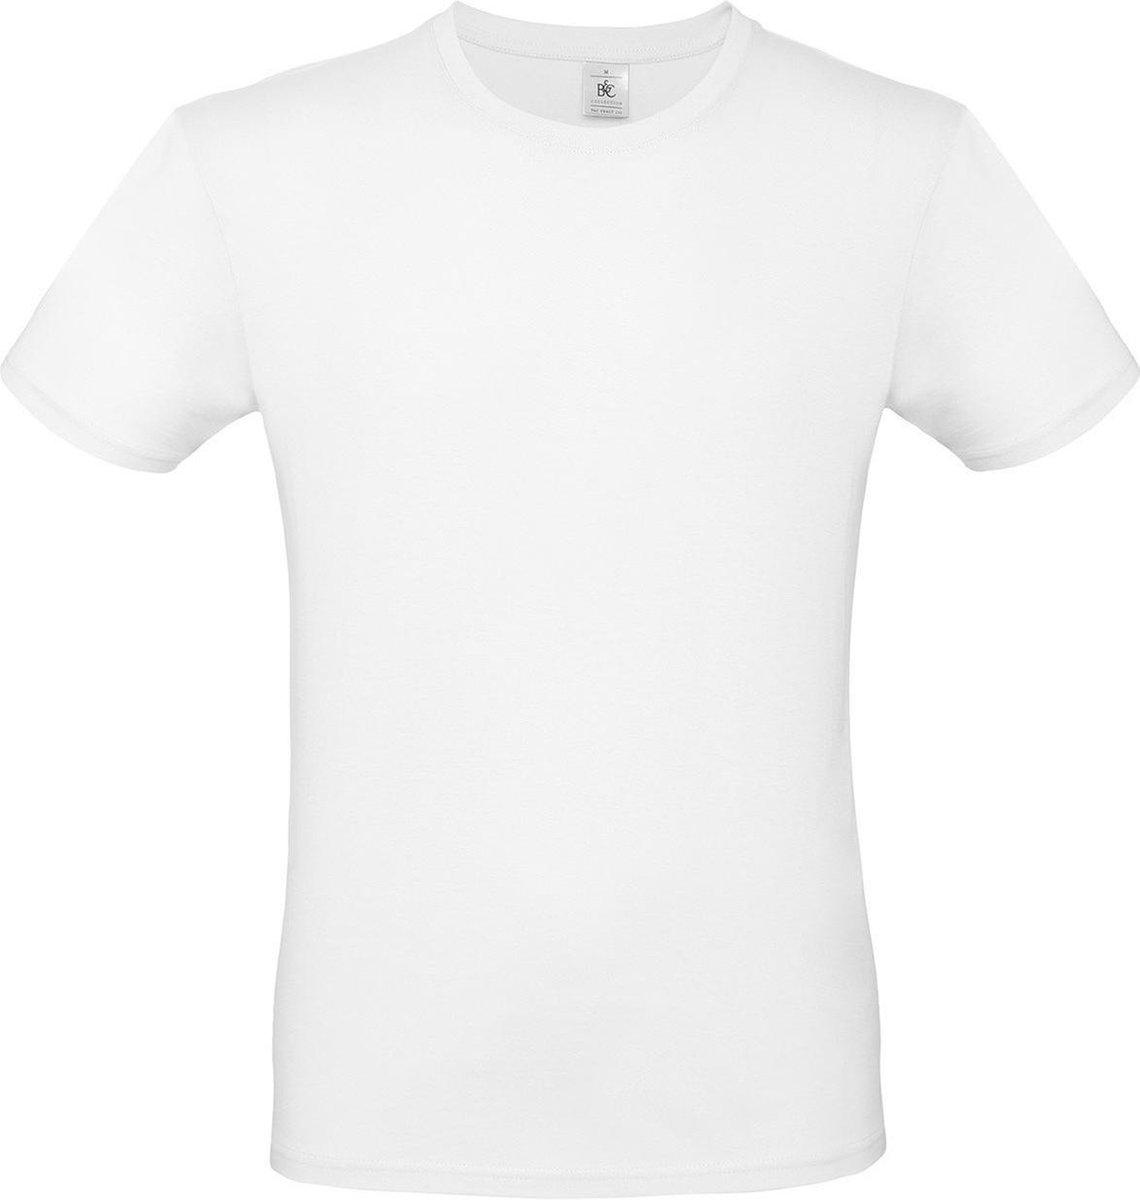 Set van 2x stuks wit basic t-shirt met ronde hals voor heren - katoen - 145 grams - witte shirts / kleding, maat: 2XL (56)